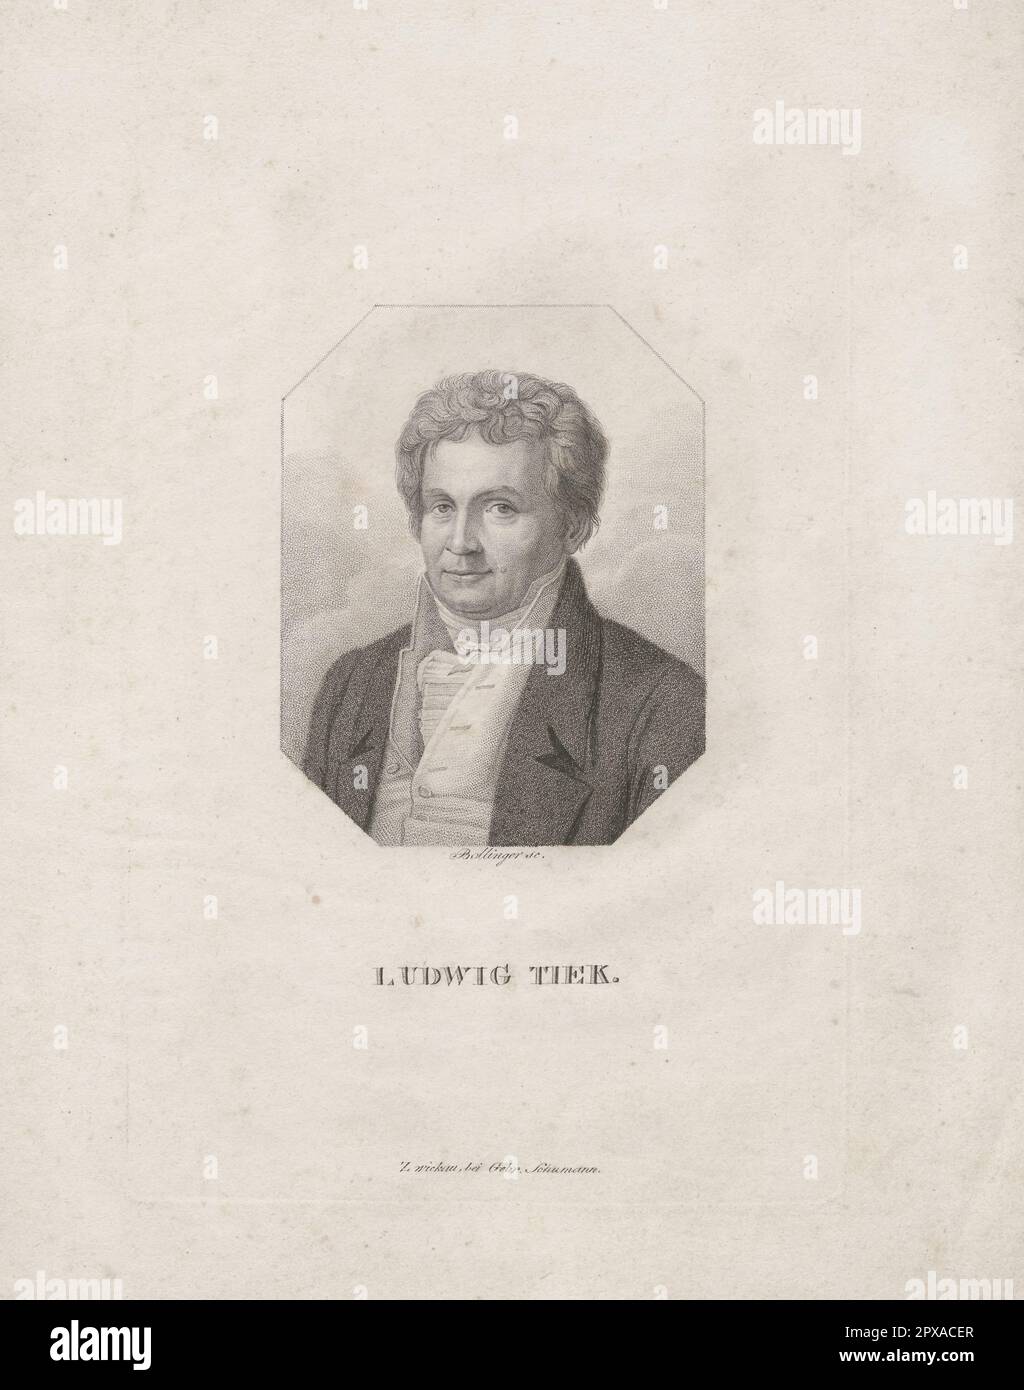 Porträt von Ludwig Tieck. 1825 Johann Ludwig Tieck (1773-1853) war ein deutscher Dichter, Autor, Übersetzer und Kritiker. Er war einer der Gründerväter der Romantischen Bewegung im späten 18. Und frühen 19. Jahrhundert. Stockfoto